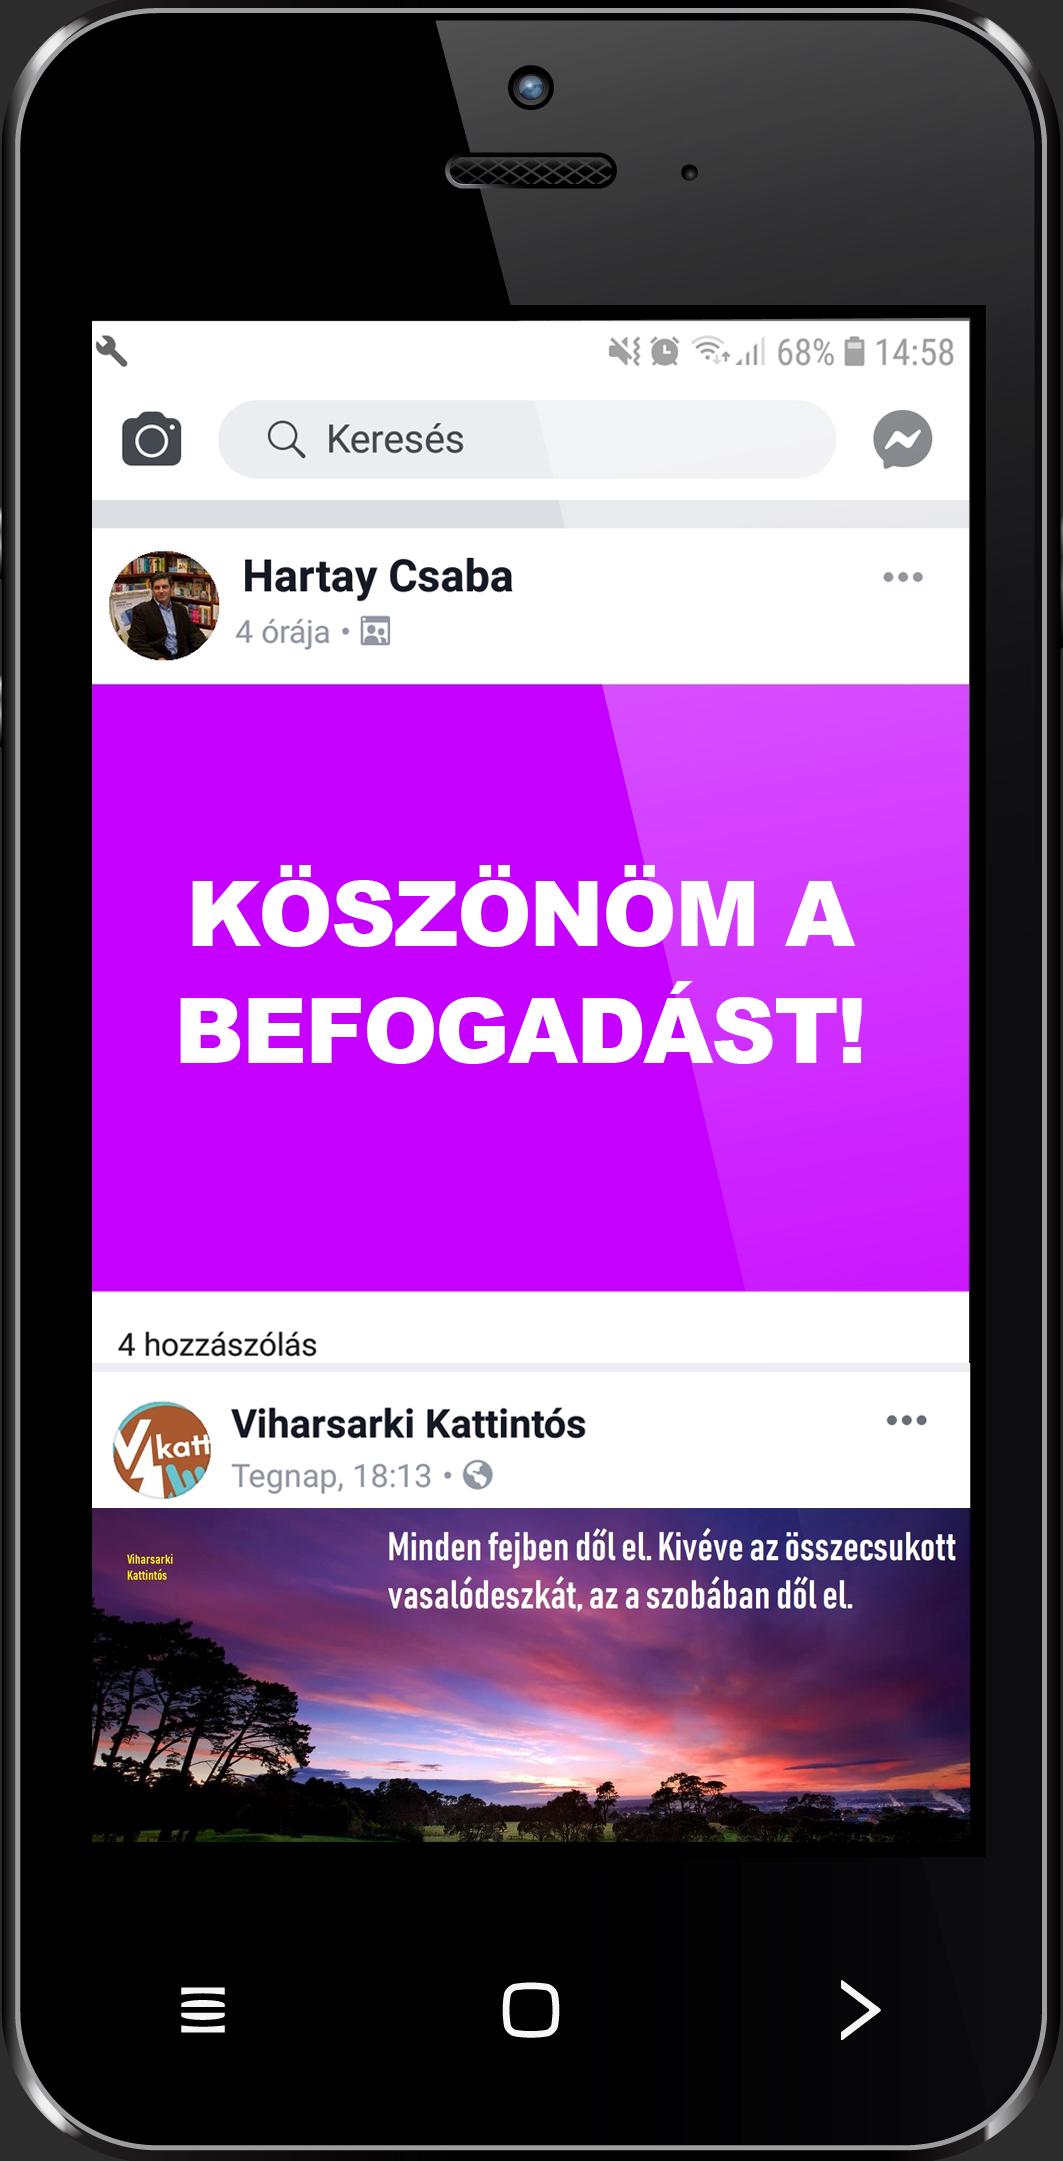 Hartay Csaba - Köszönöm a befogadást! - Viharsarki kattintós - ÜKH 2019